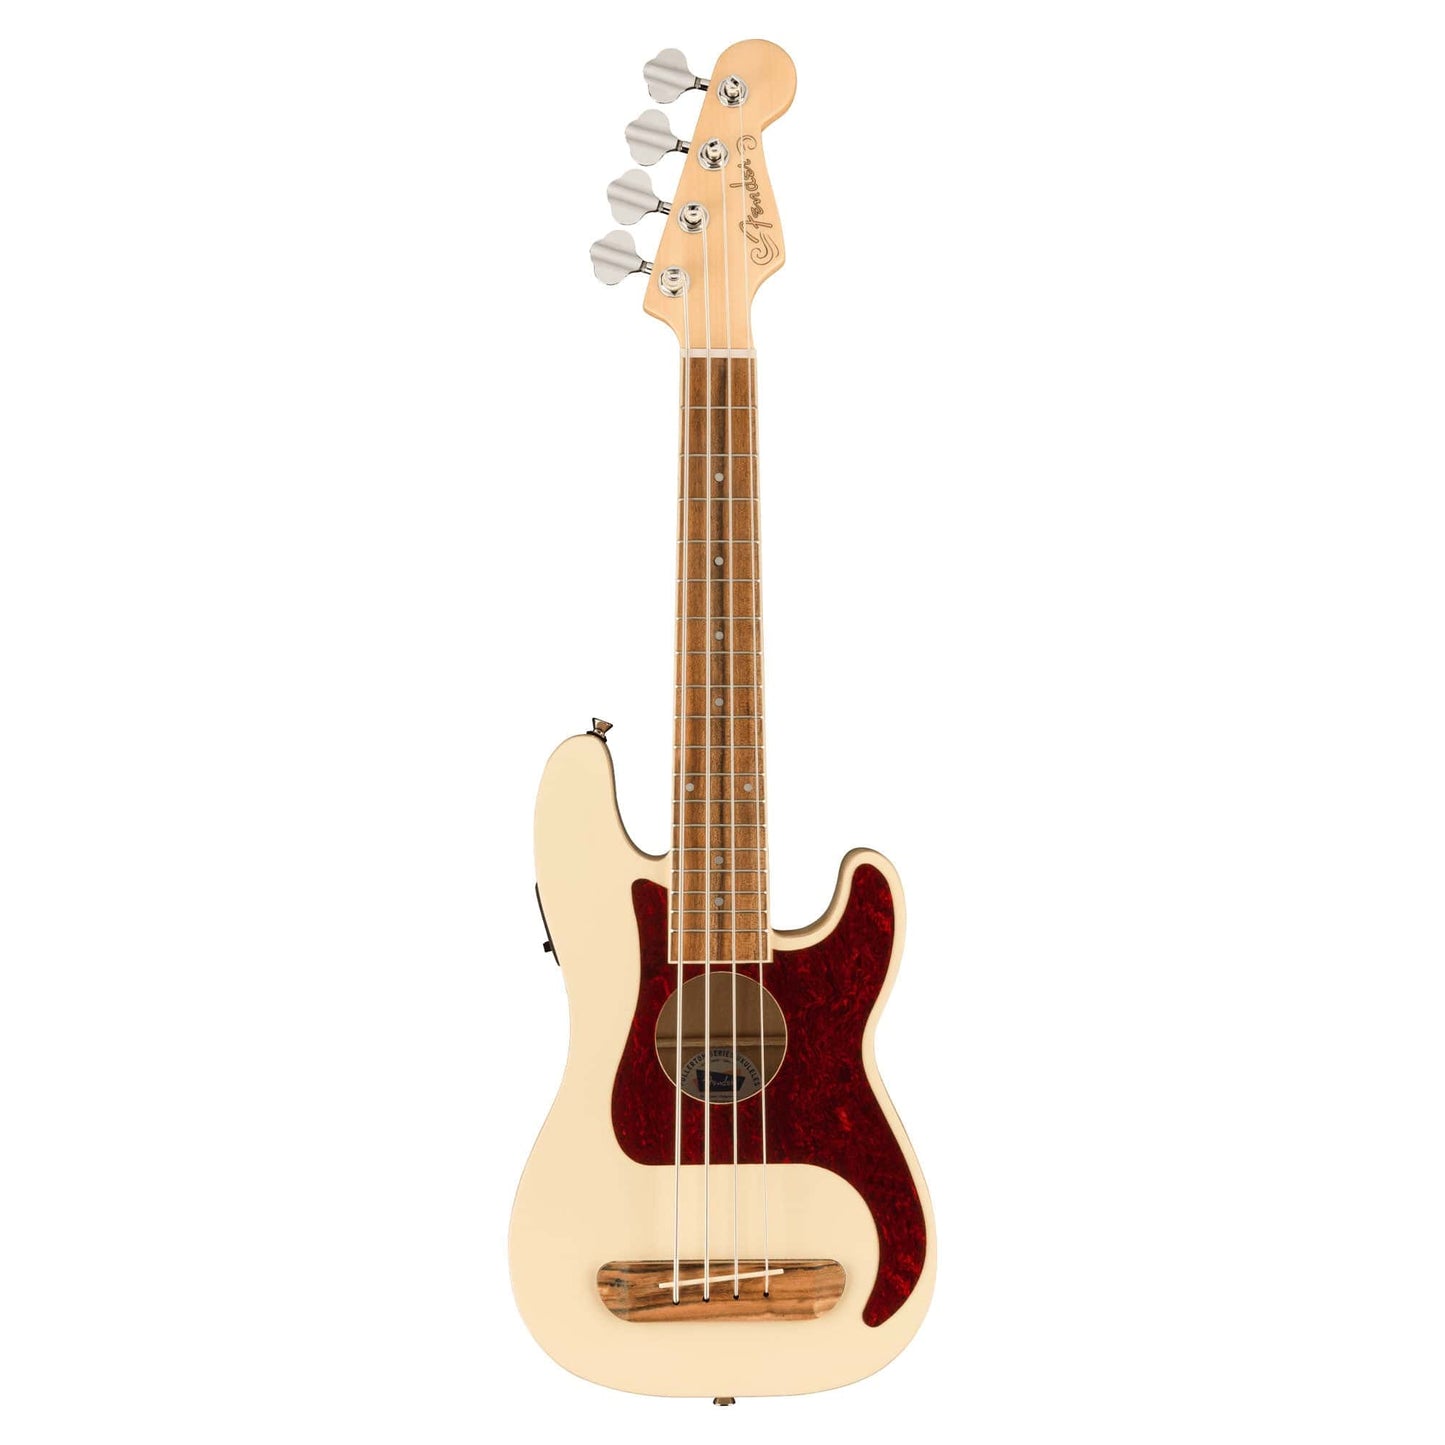 Fender Fullerton Precision Bass Ukulele Olympic White Folk Instruments / Ukuleles